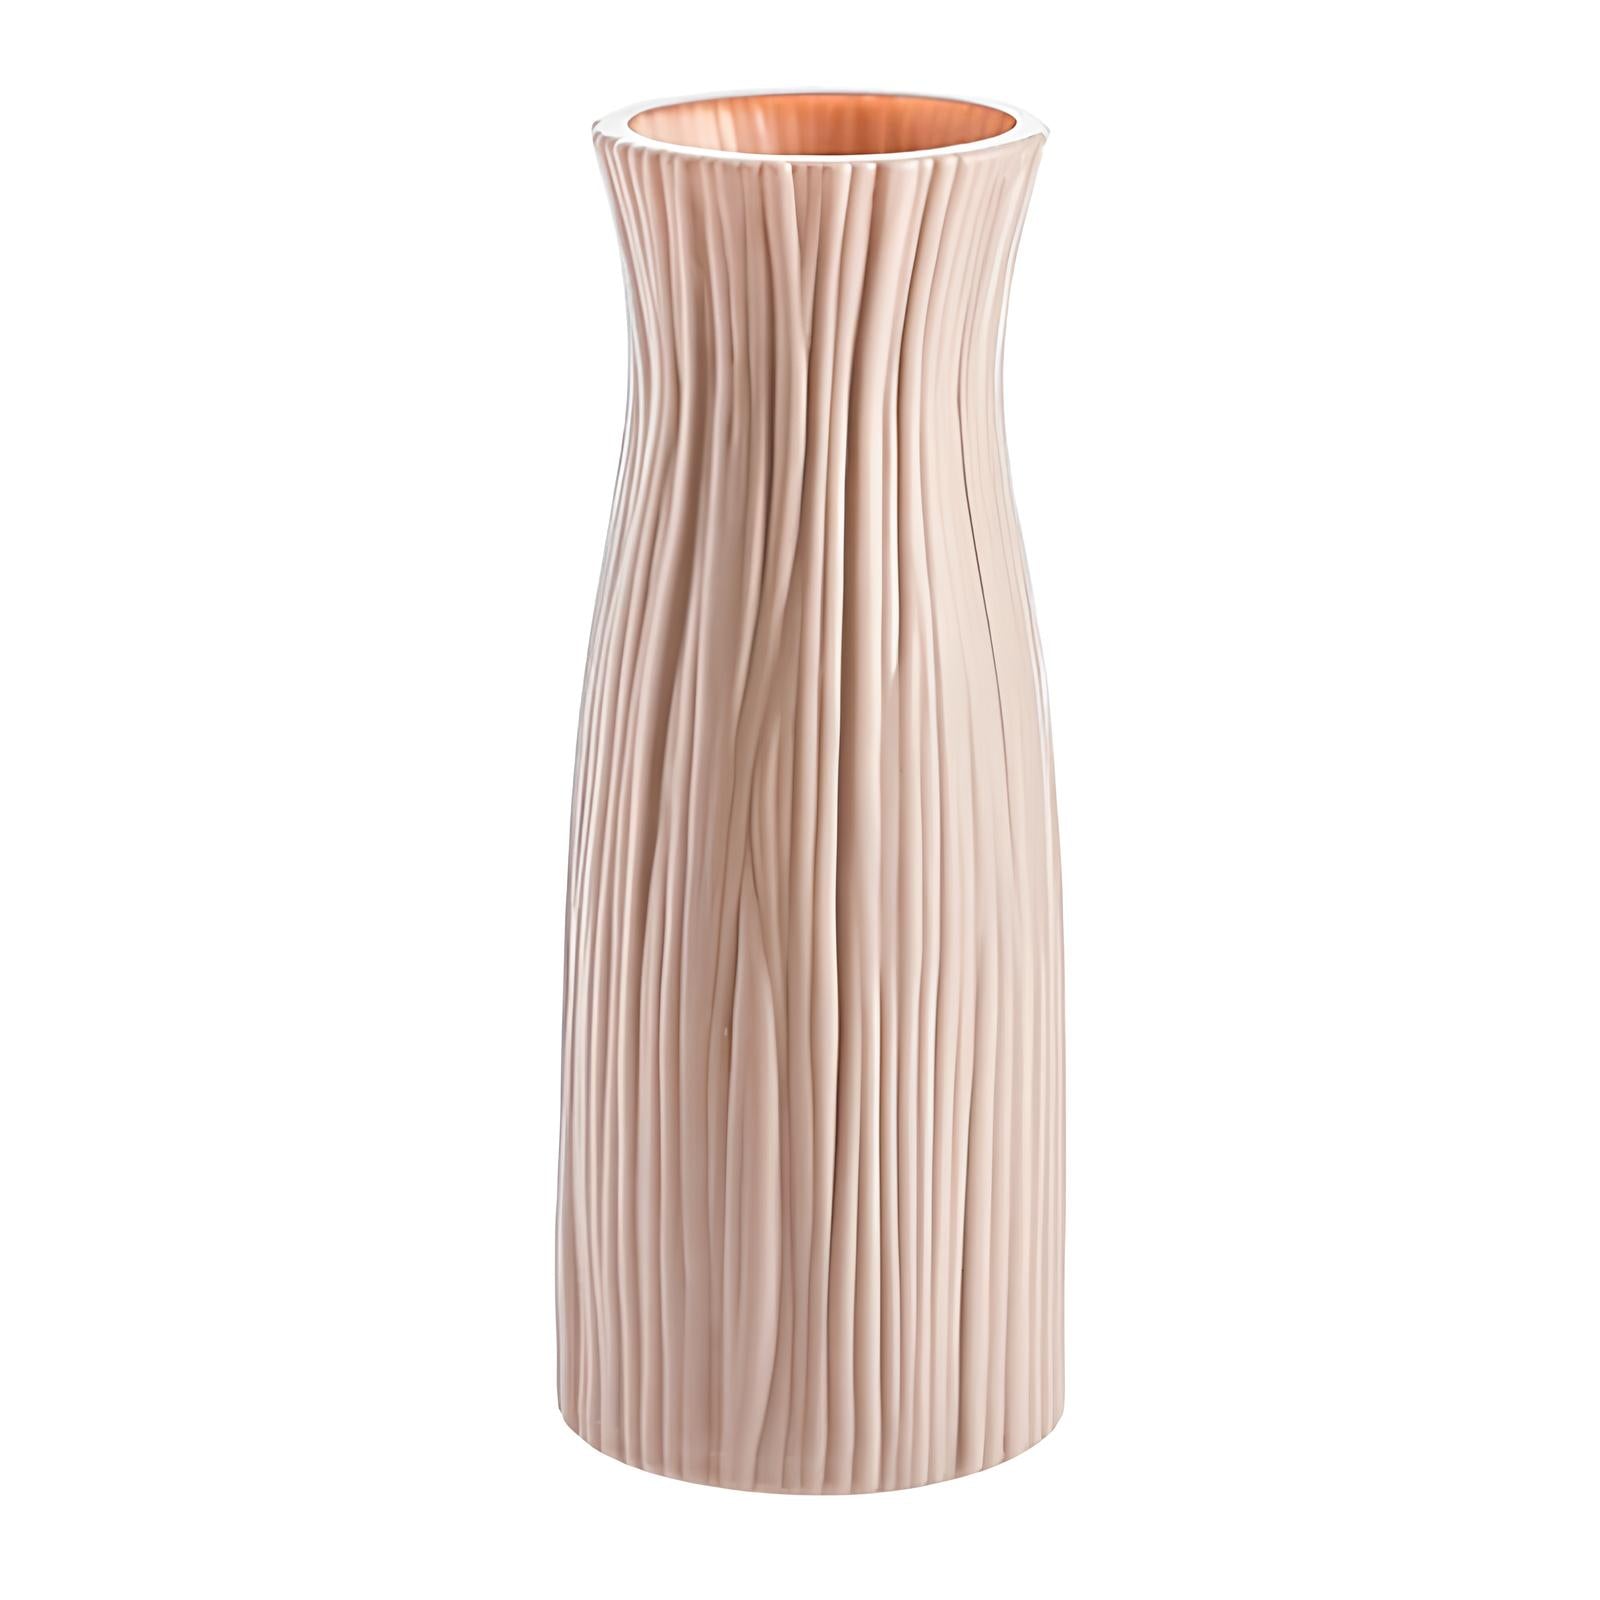 Vase décoratif - Le tronc d'arbre - UstensilesCulinaires